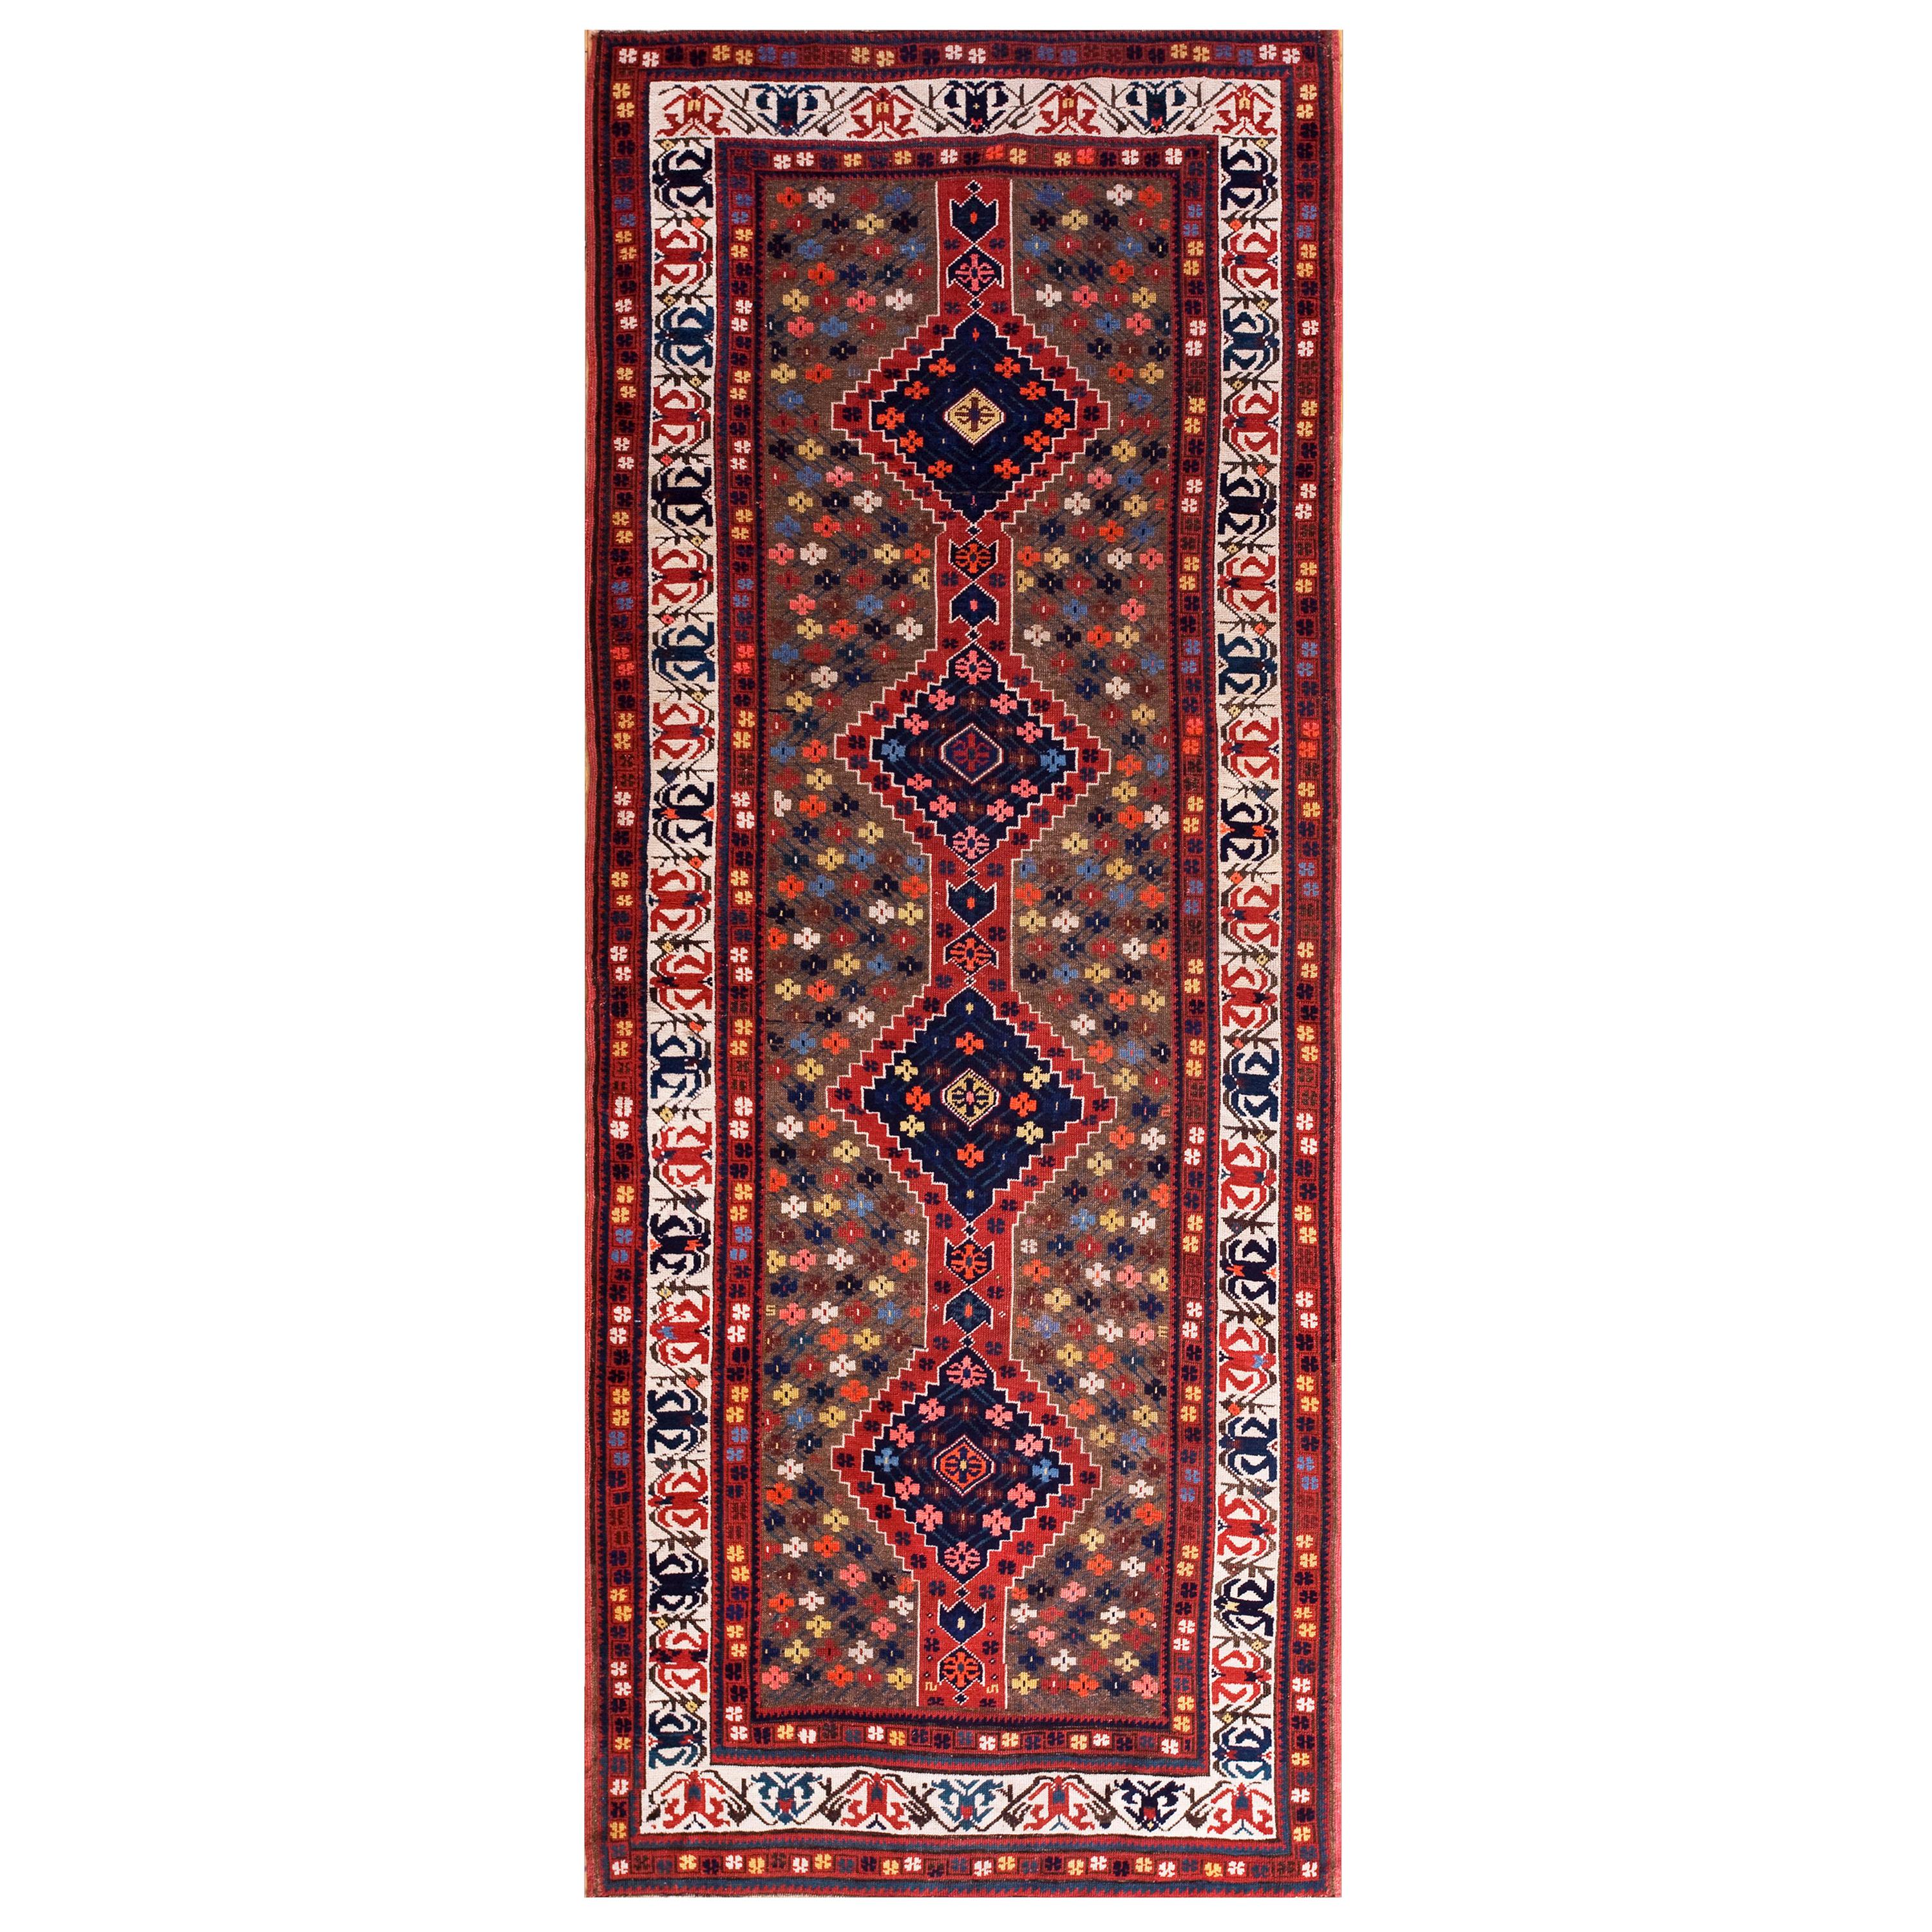 Kaukasischer Teppich aus dem späten 19. Jahrhundert ( 4' x 9'6" - 122 x 290 )